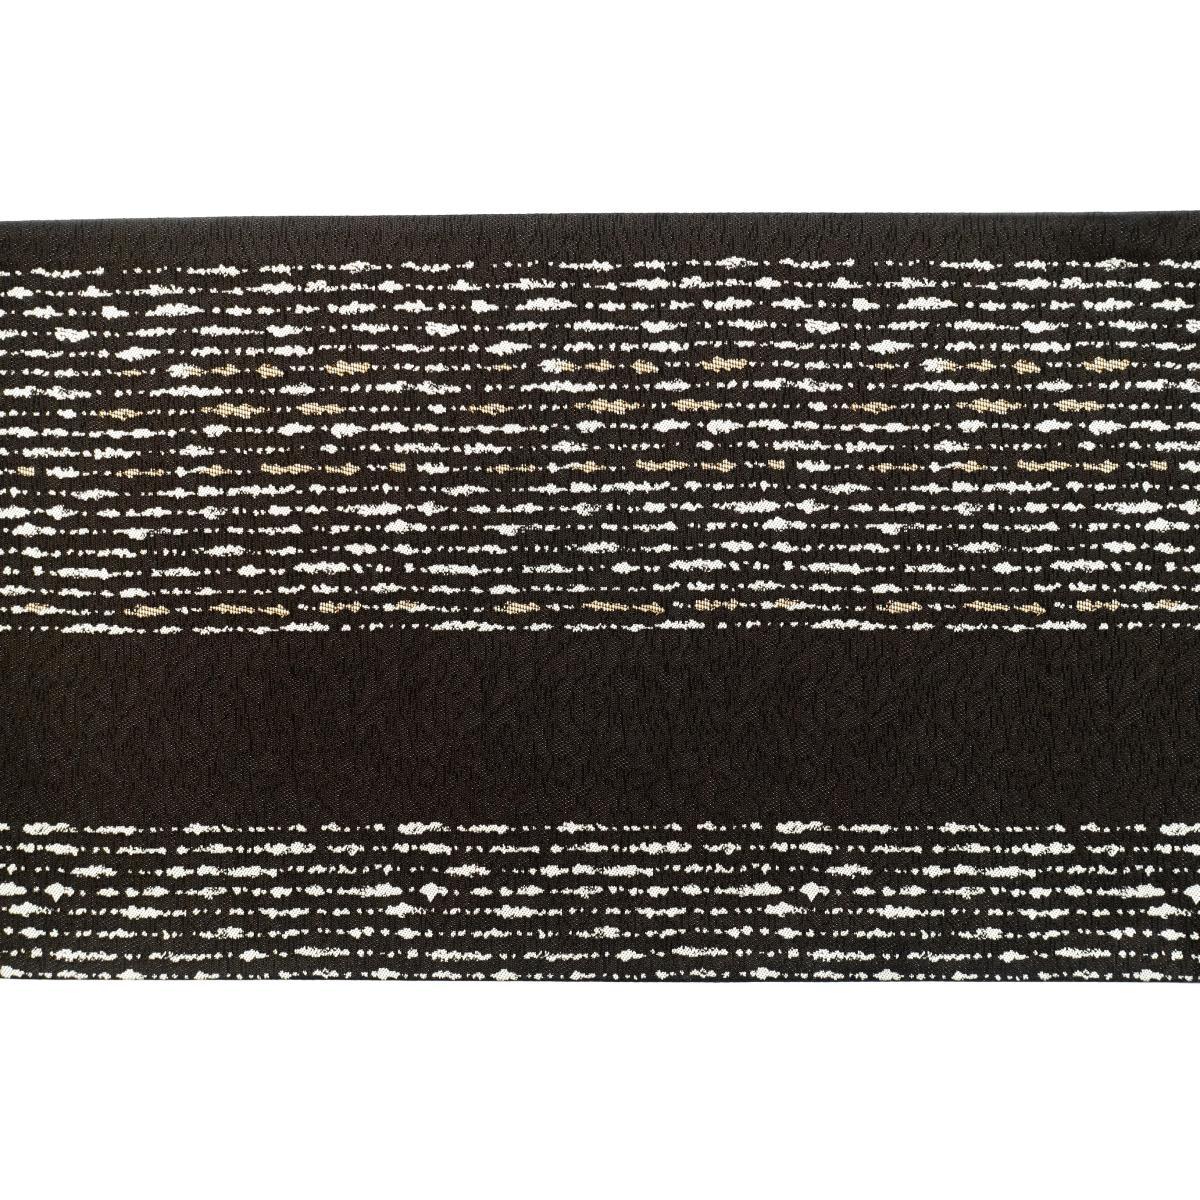 [Unused items] Bag belt